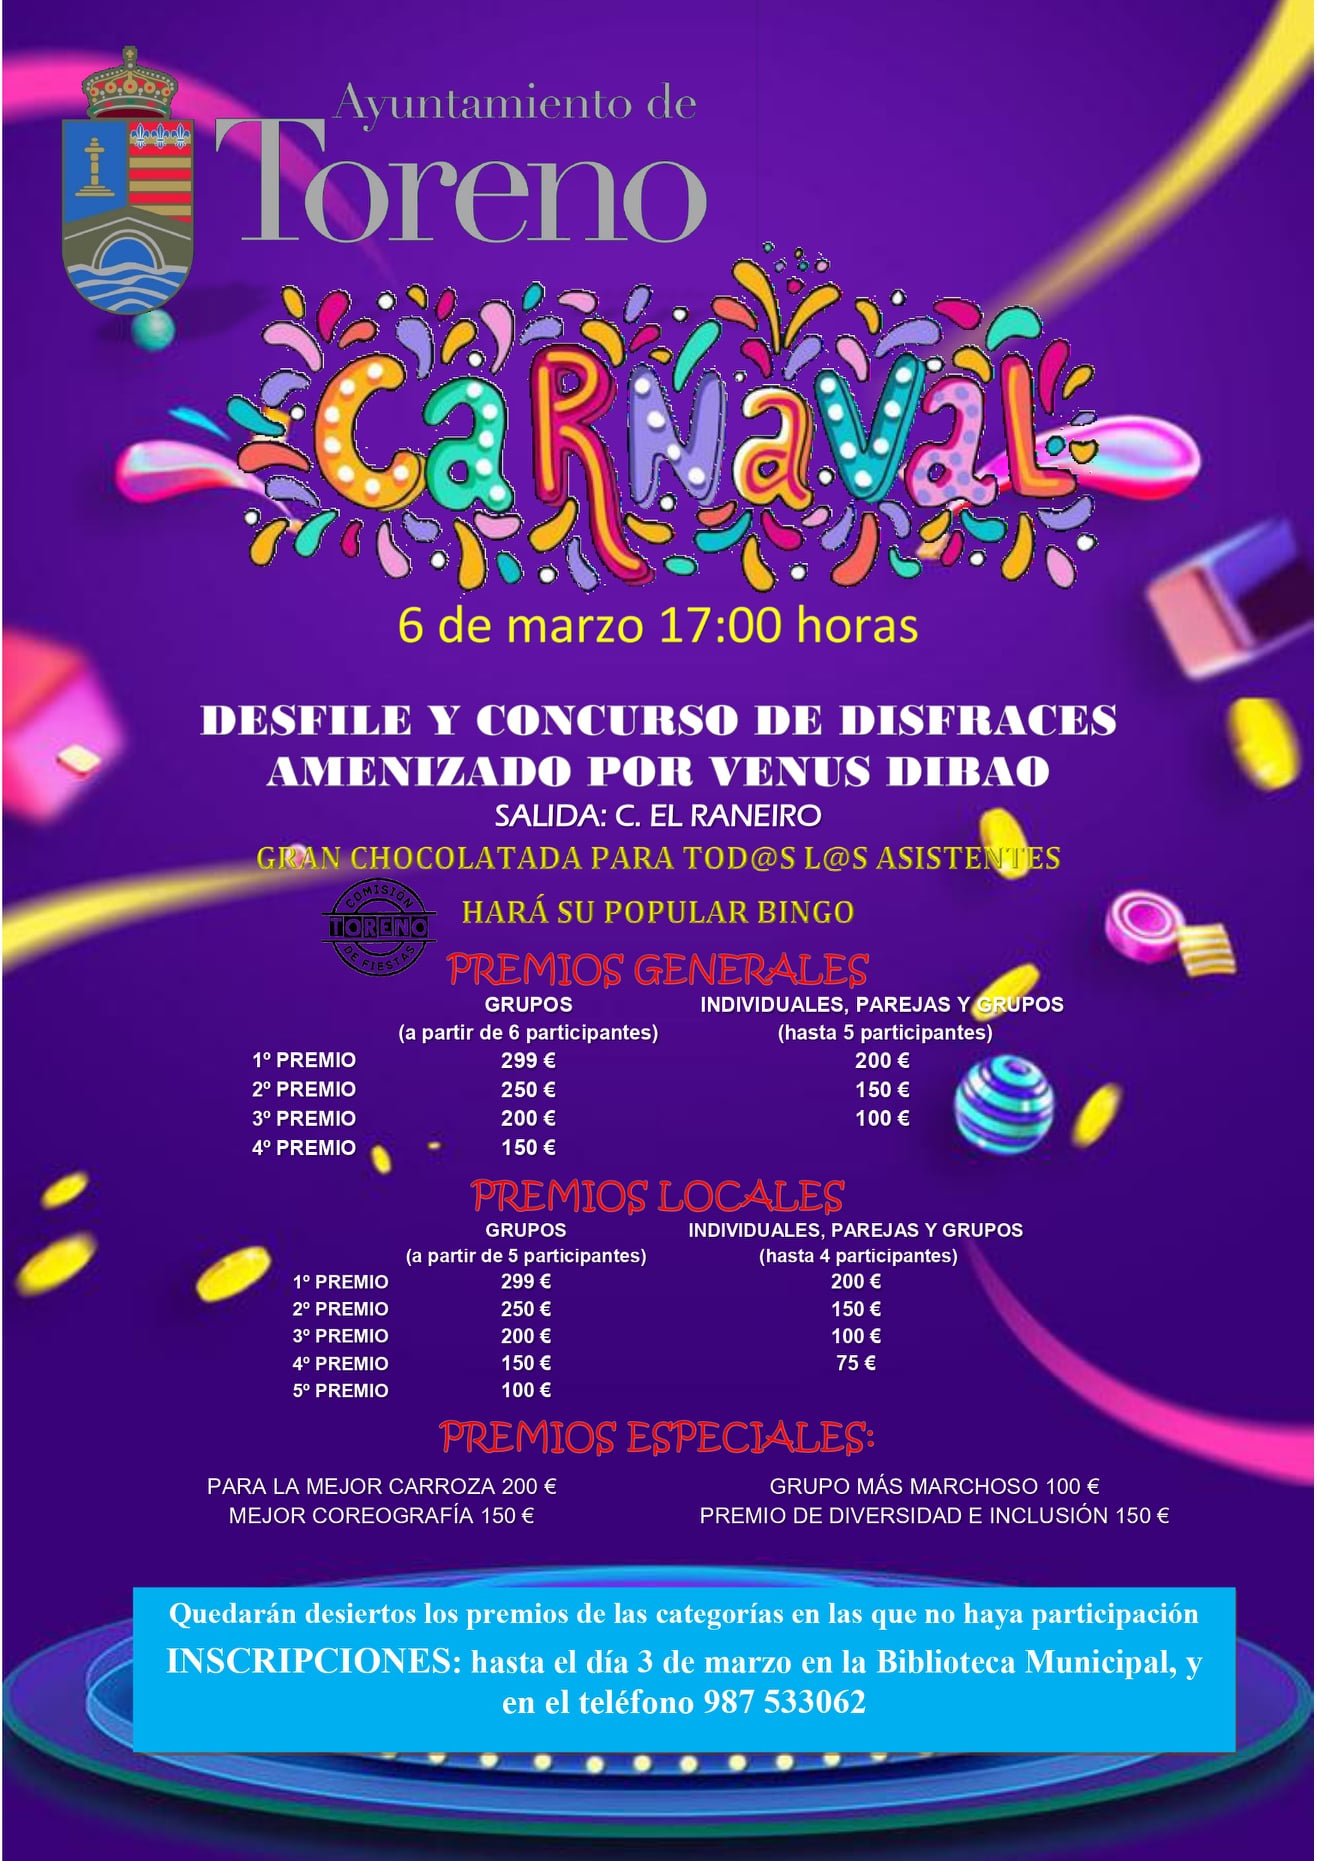 Carnaval 2022 en Toreno. Horario y todos los premios del tradicional desfile 2